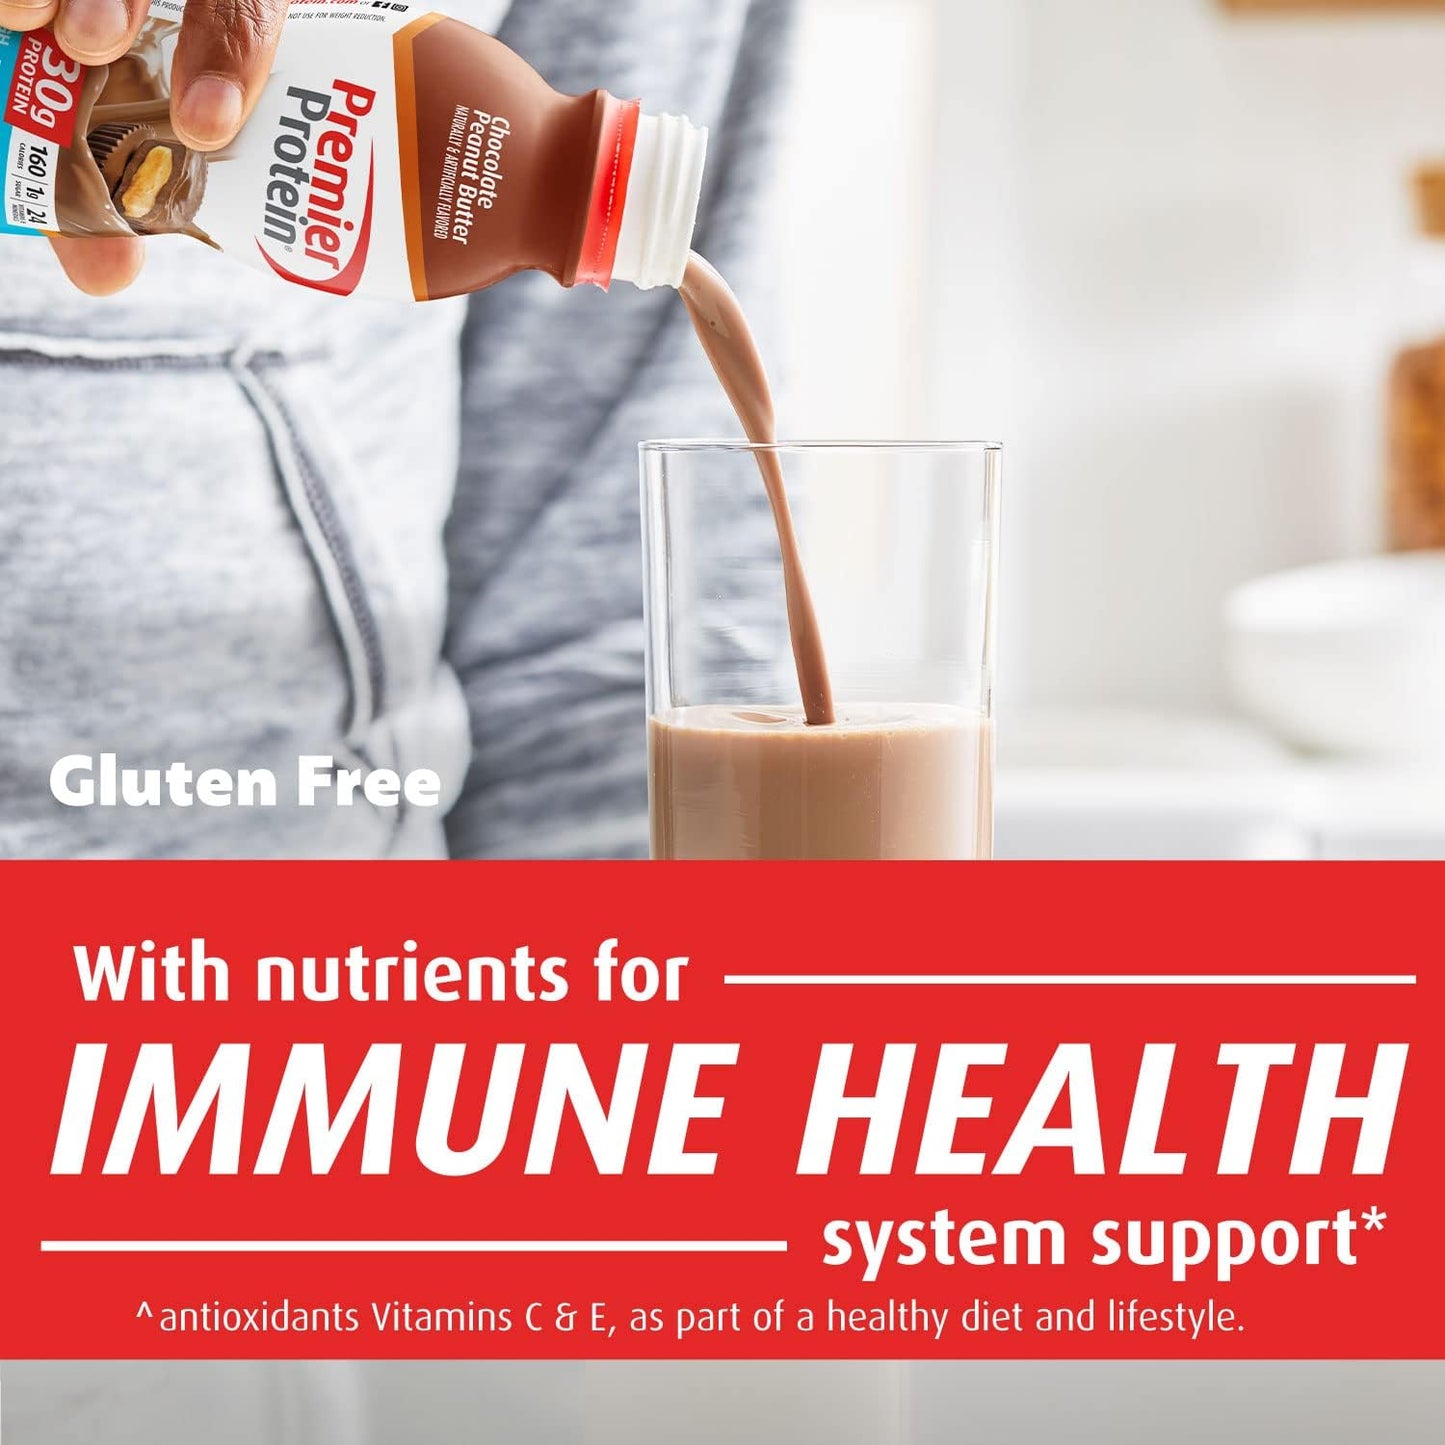 Premier Protein Shake, Chocolate Peanut Butter, 30g Protein, 1g Sugar, 24 Vitamins & Minerals, Nutrients to Support Immune Health, 11.5 Fl Oz, 12 Count